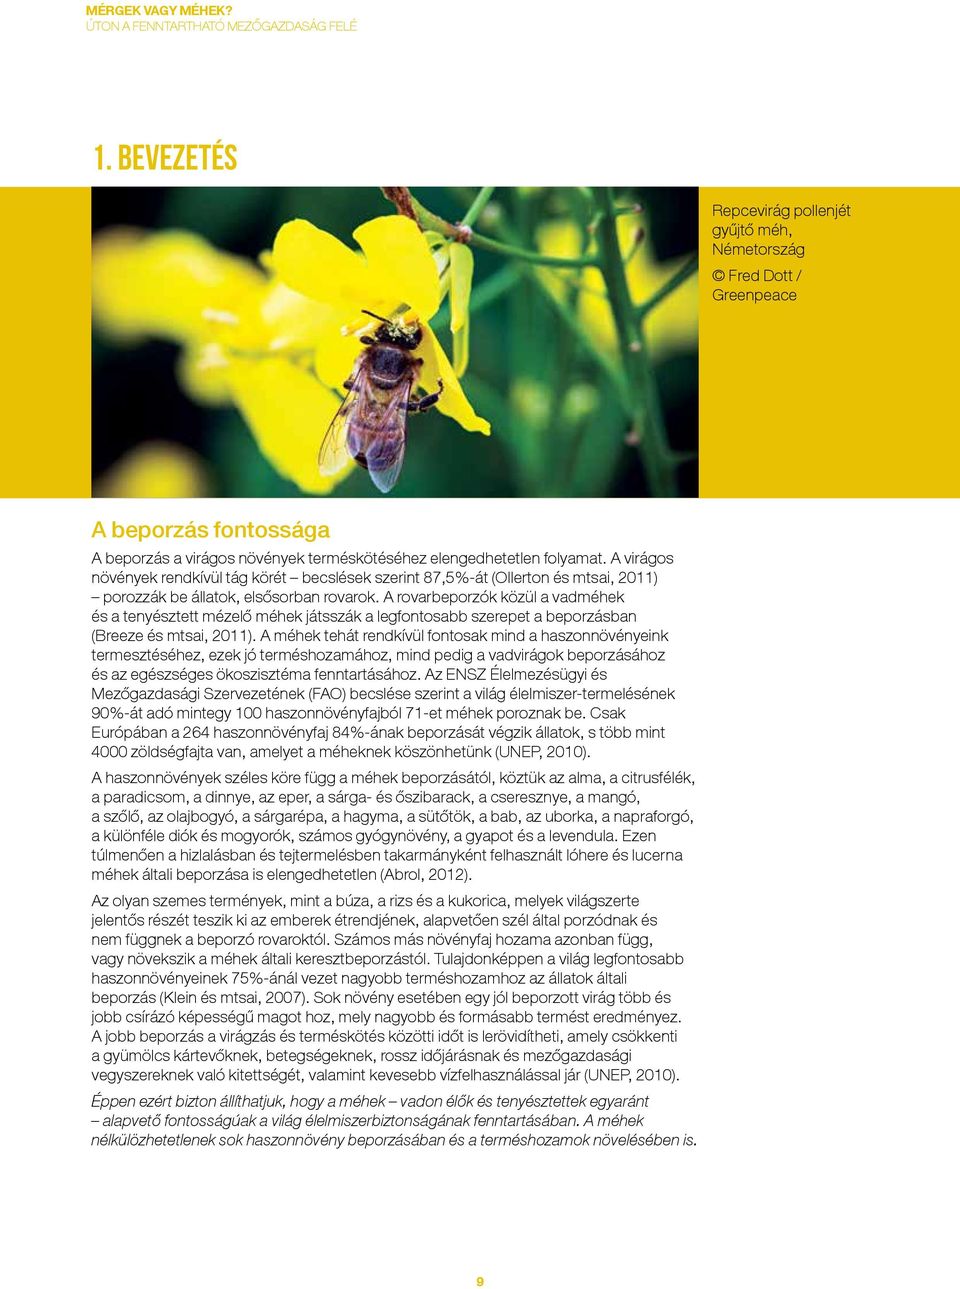 A rovarbeporzók közül a vadméhek és a tenyésztett mézelő méhek játsszák a legfontosabb szerepet a beporzásban (Breeze és mtsai, 2011).